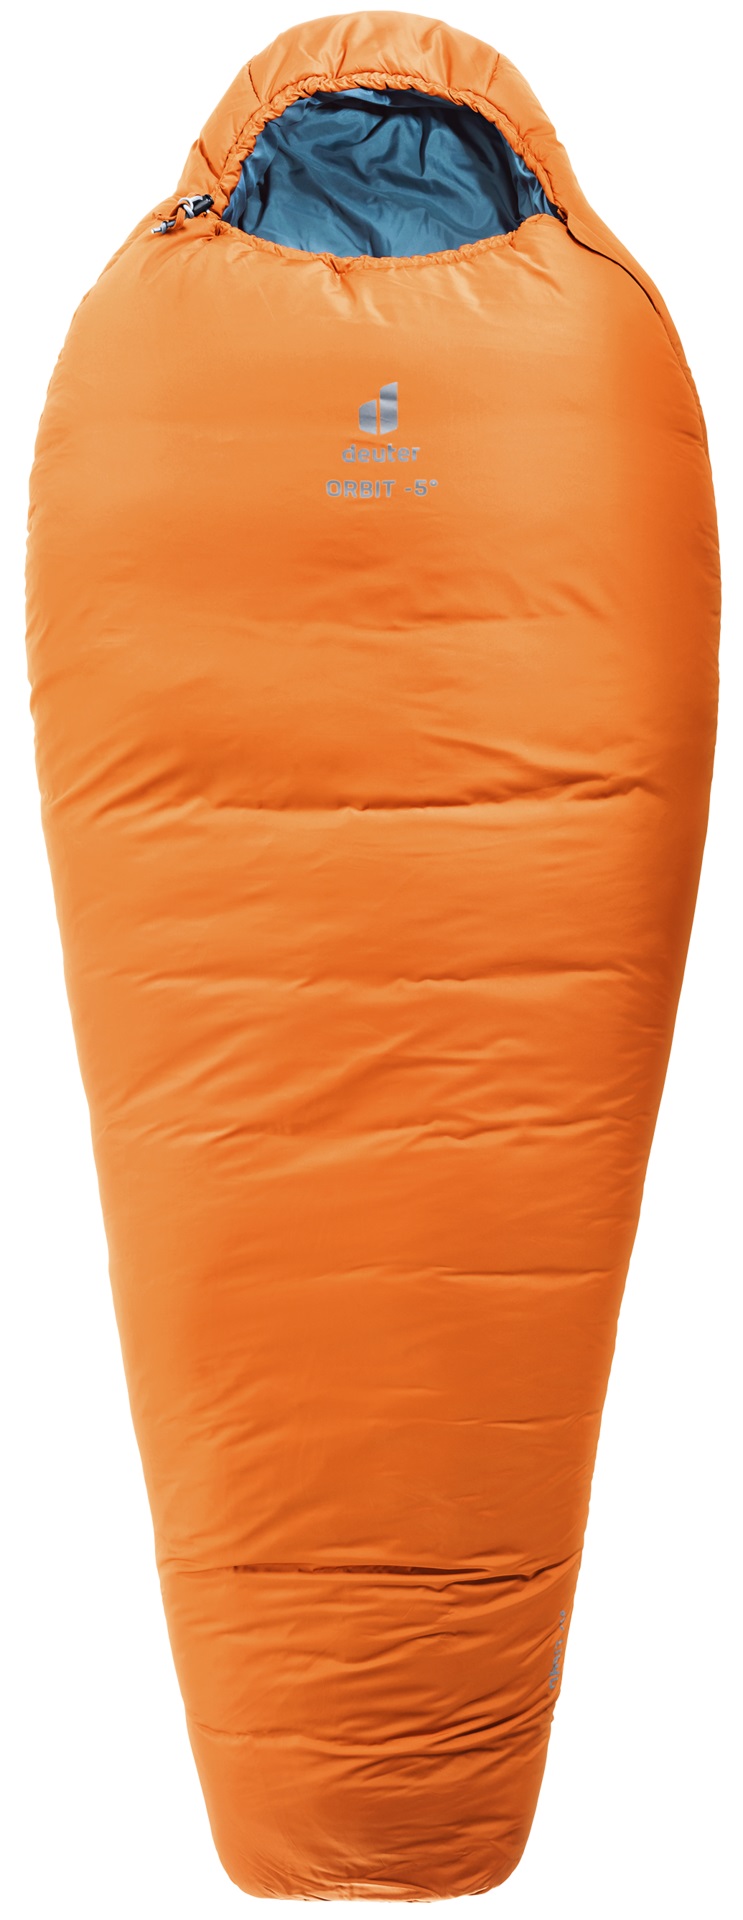 Спальный мешок Deuter Orbit Reg mandarine/slateblue, левый